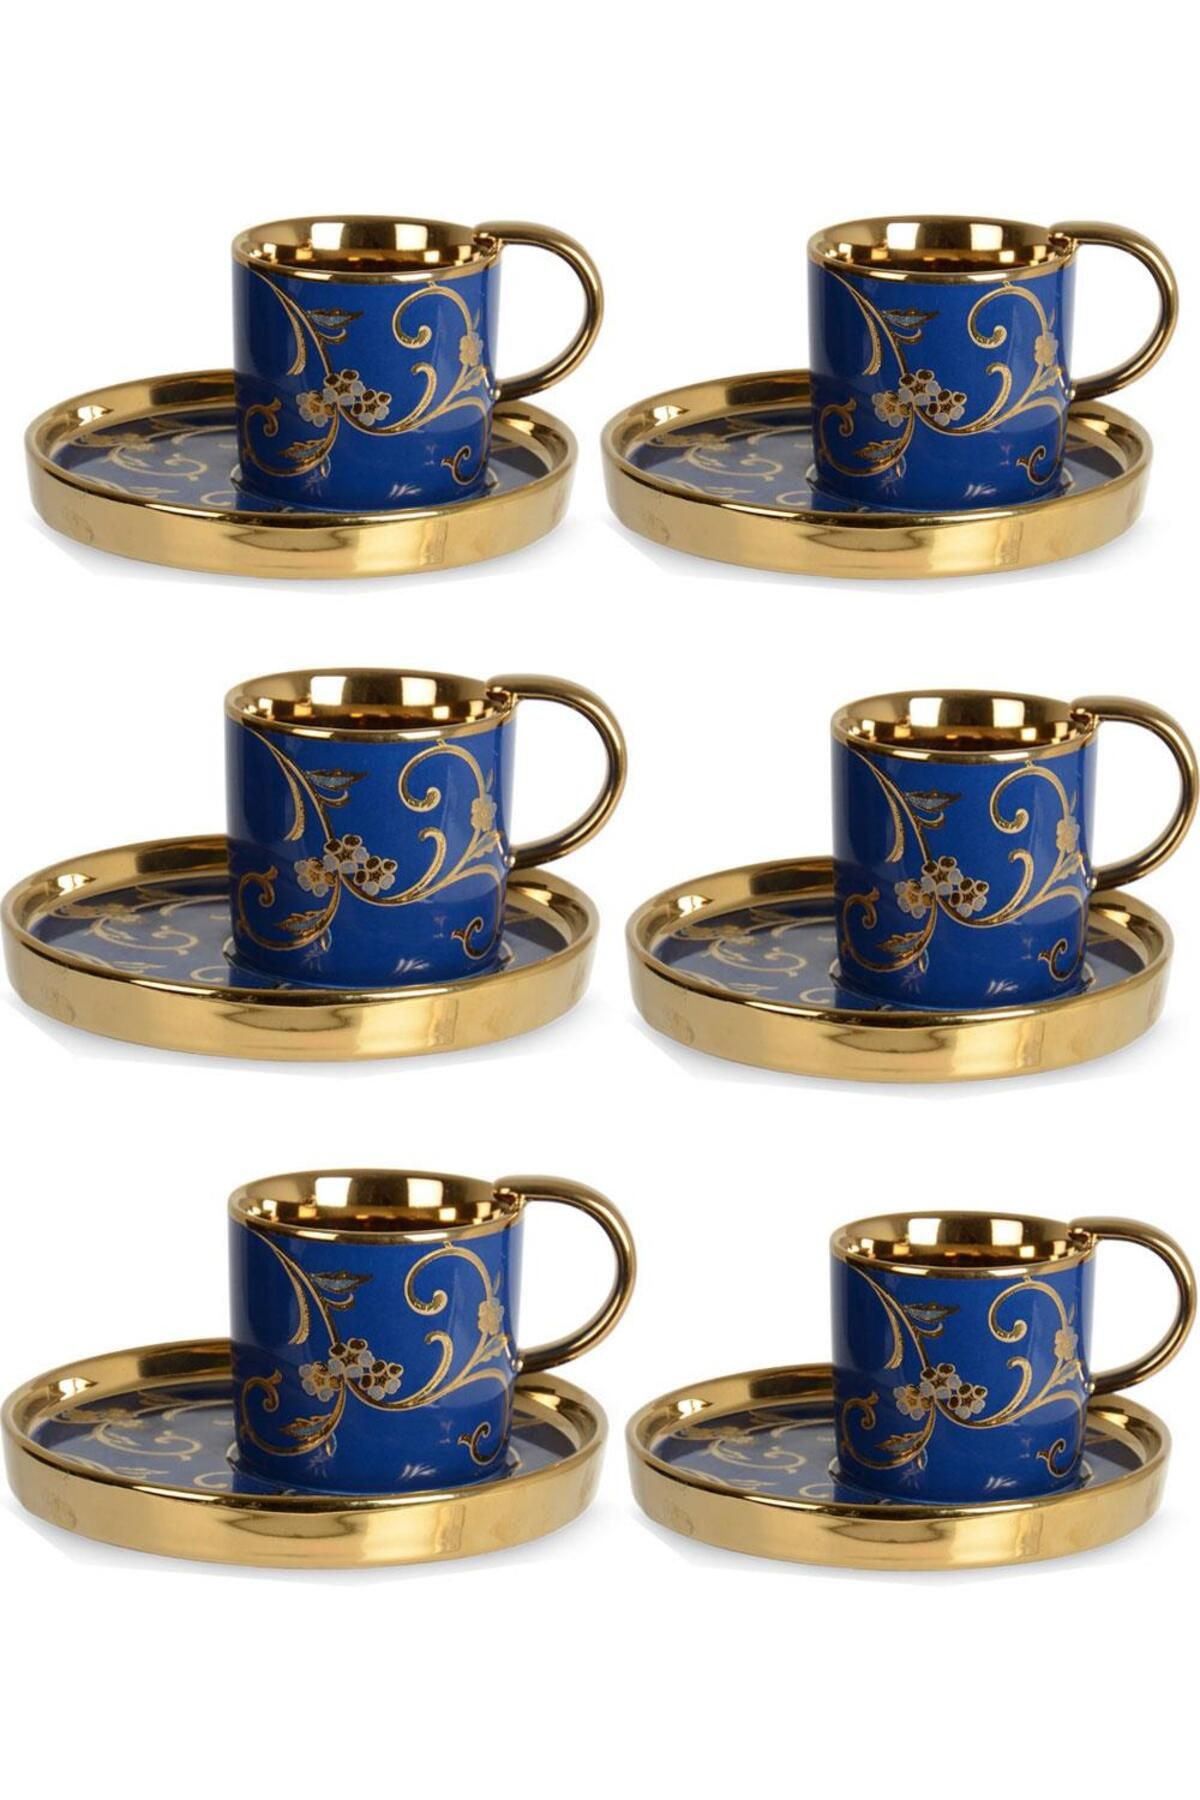 İpek Porselen Gold Detaylı Mavi 6'lı Kahve Fincan Takımı Eg24d10g-461447g P